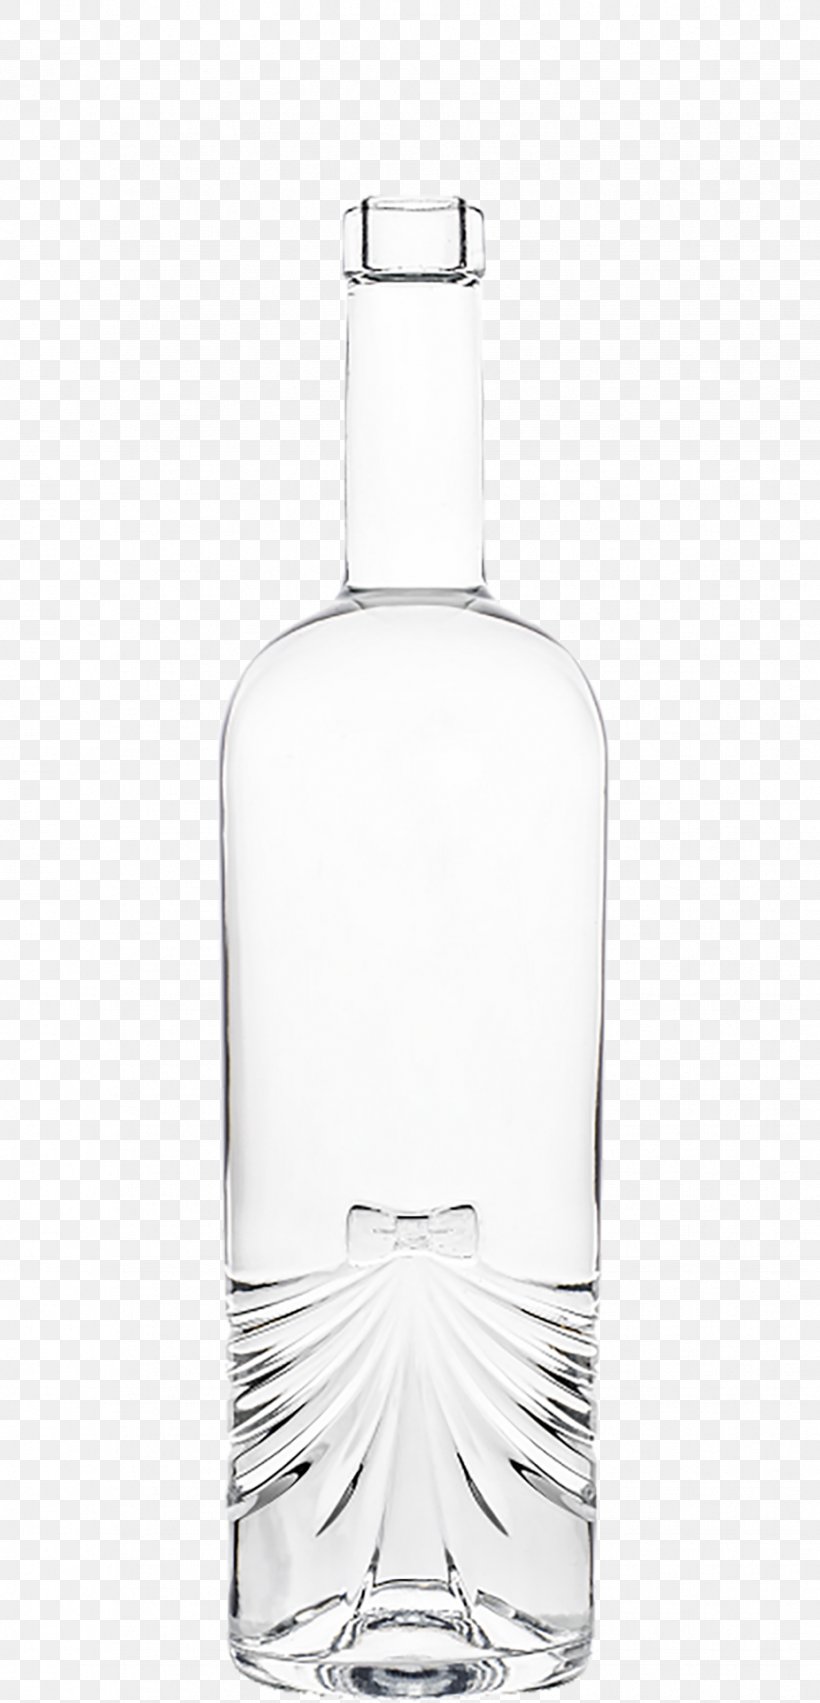 Glass Bottle Wine Distilled Beverage Bung, PNG, 926x1924px, Glass Bottle, Barware, Bottle, Bottle Cap, Bung Download Free